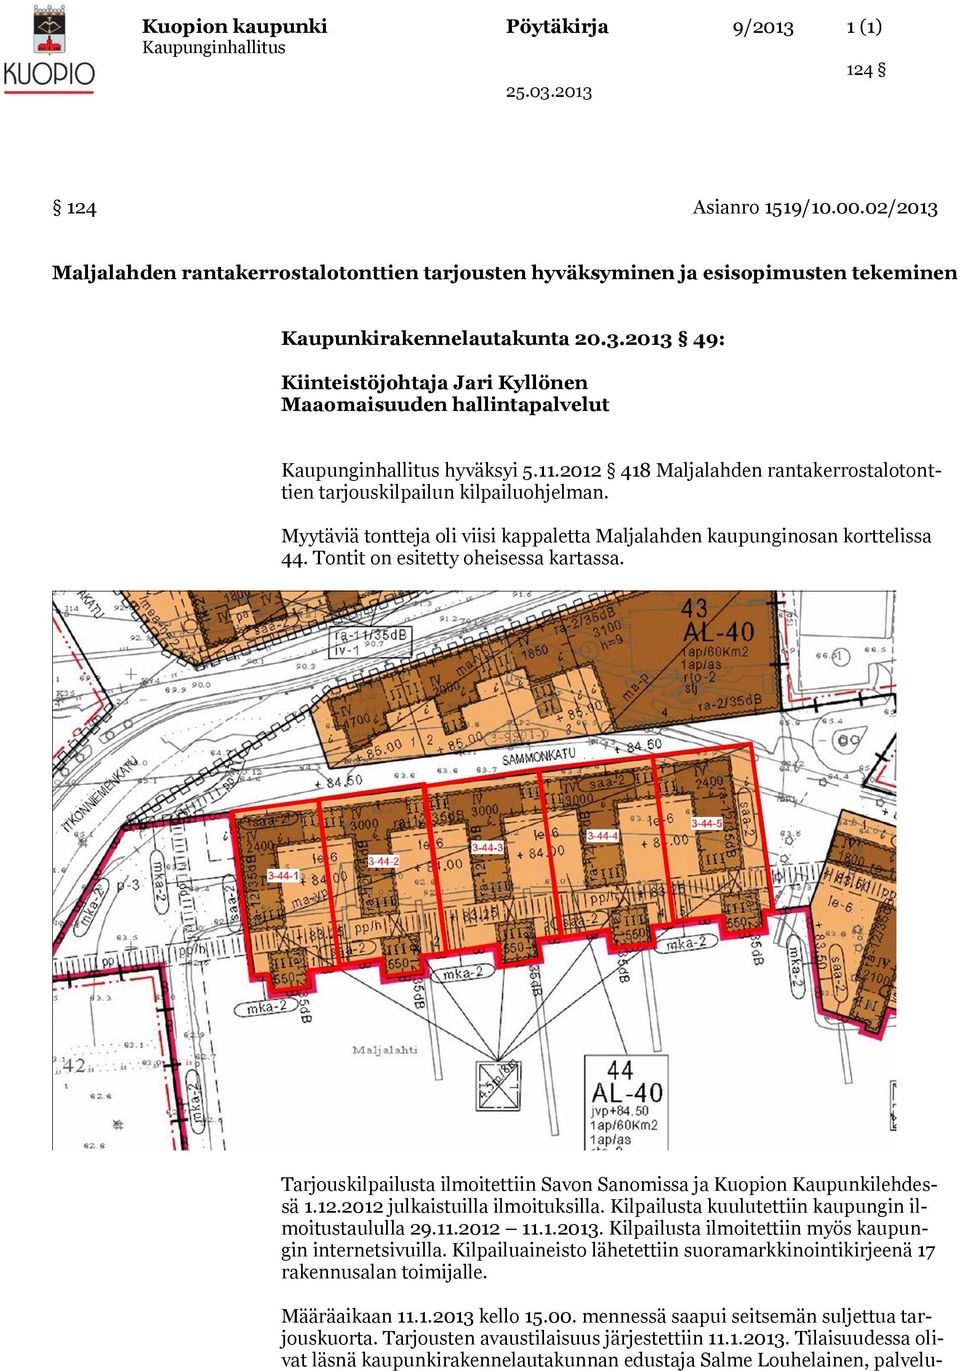 Tontit on esitetty oheisessa kartassa. Tarjouskilpailusta ilmoitettiin Savon Sanomissa ja Kuopion Kaupunkilehdessä 1.12.2012 julkaistuilla ilmoituksilla.